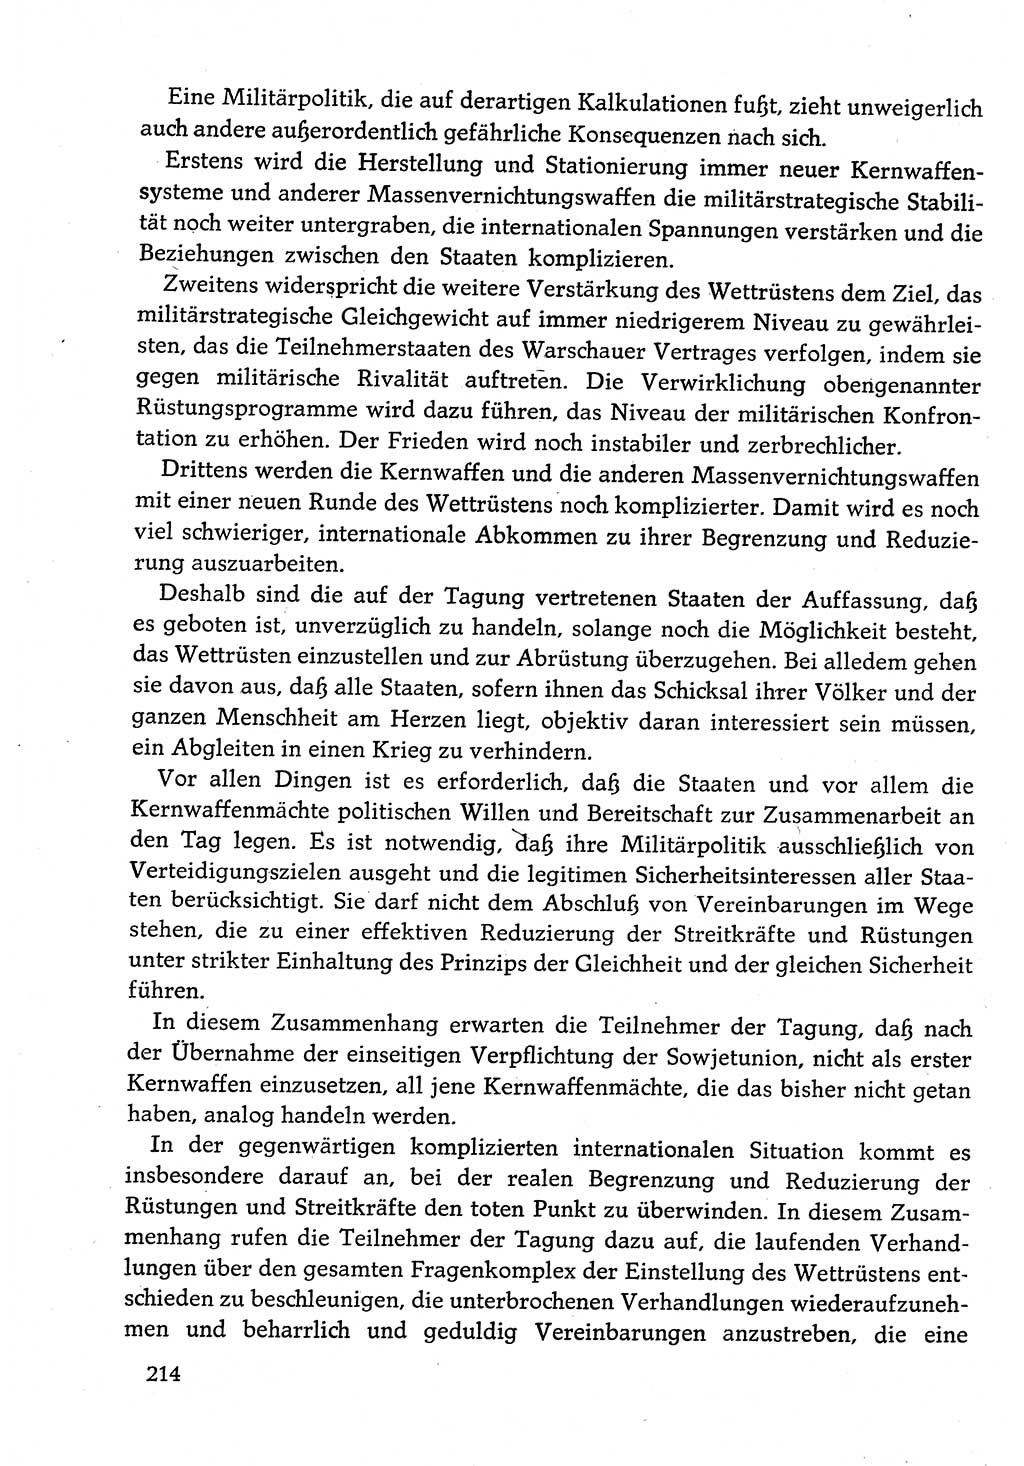 Dokumente der Sozialistischen Einheitspartei Deutschlands (SED) [Deutsche Demokratische Republik (DDR)] 1982-1983, Seite 214 (Dok. SED DDR 1982-1983, S. 214)